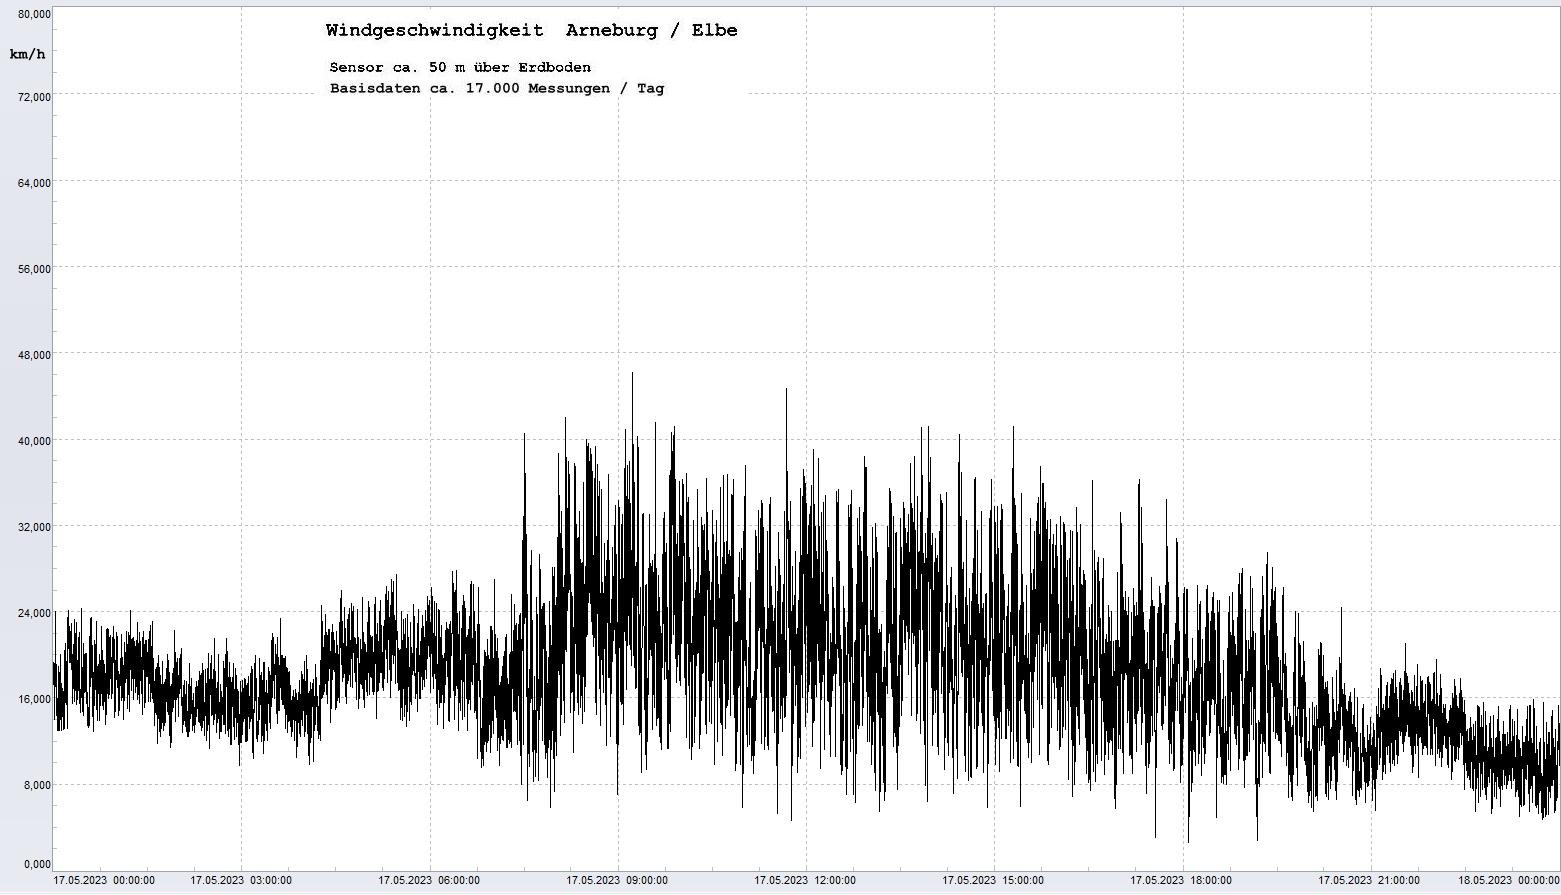 Arneburg Tages-Diagramm Winddaten, 17.05.2023
  Diagramm, Sensor auf Gebude, ca. 50 m ber Erdboden, Basis: 5s-Aufzeichnung